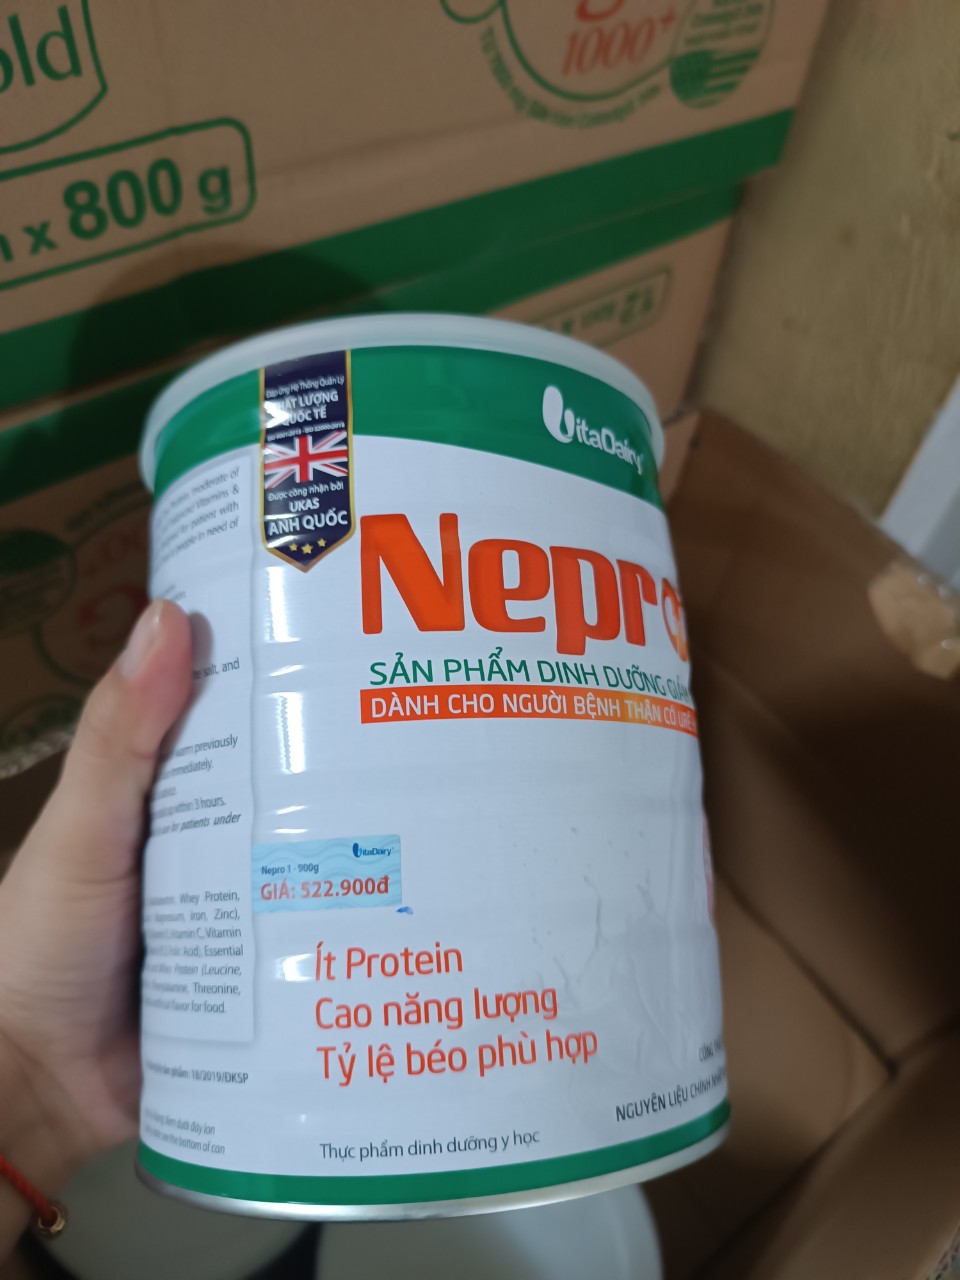 Sữa Nepro 1 900g dành cho người bệnh thận